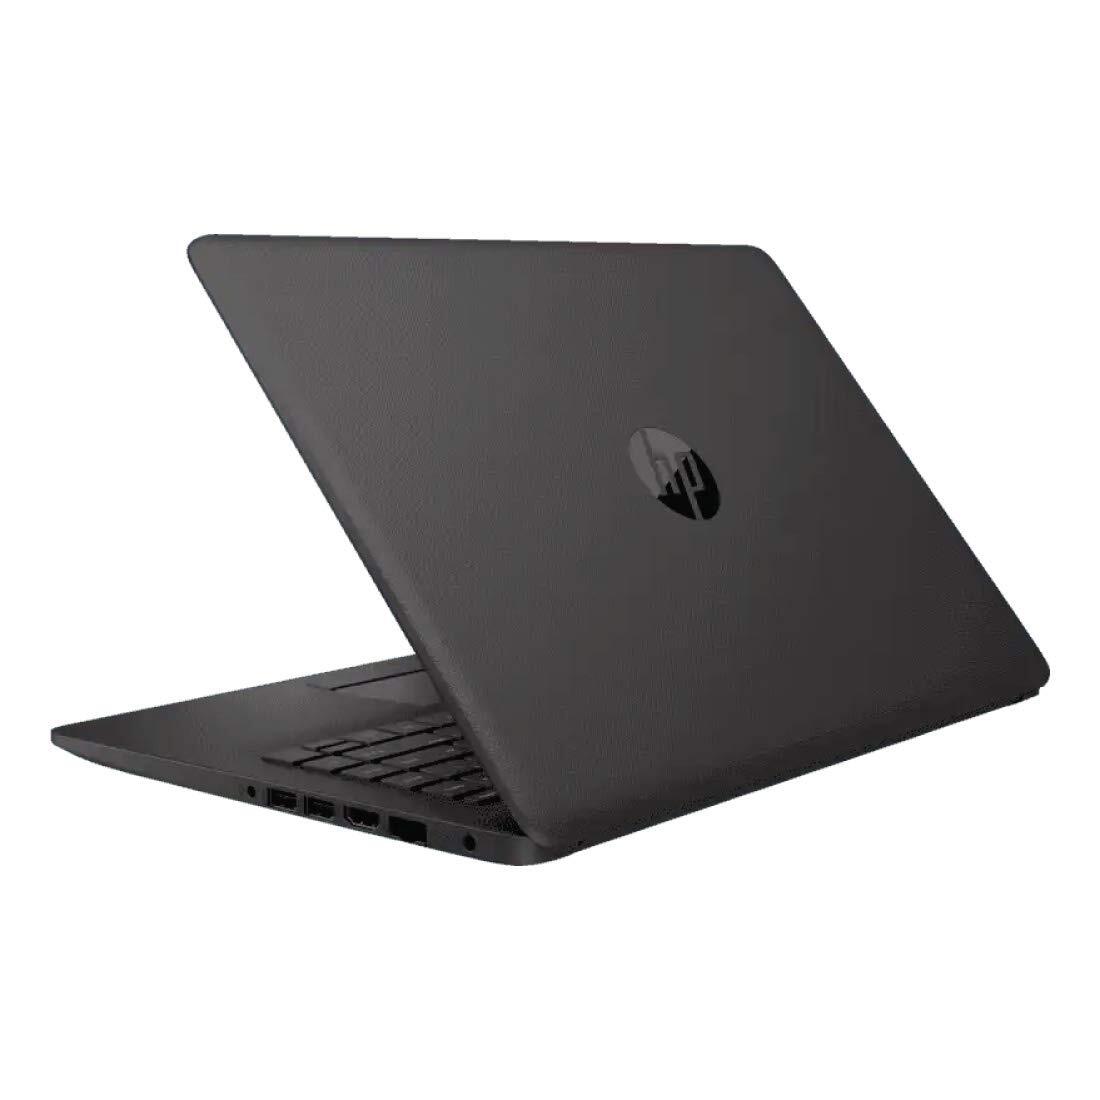 HP 240 G7 Laptop 1S5F1PA#ACJ (10th Gen Intel Core i3-1005G1/4 GB RAM/1TB HDD/14.0 inch/DOS/Intel UHD Graphics/1.52 kg) Dark Ash Silver-M000000000531 www.mysocially.com